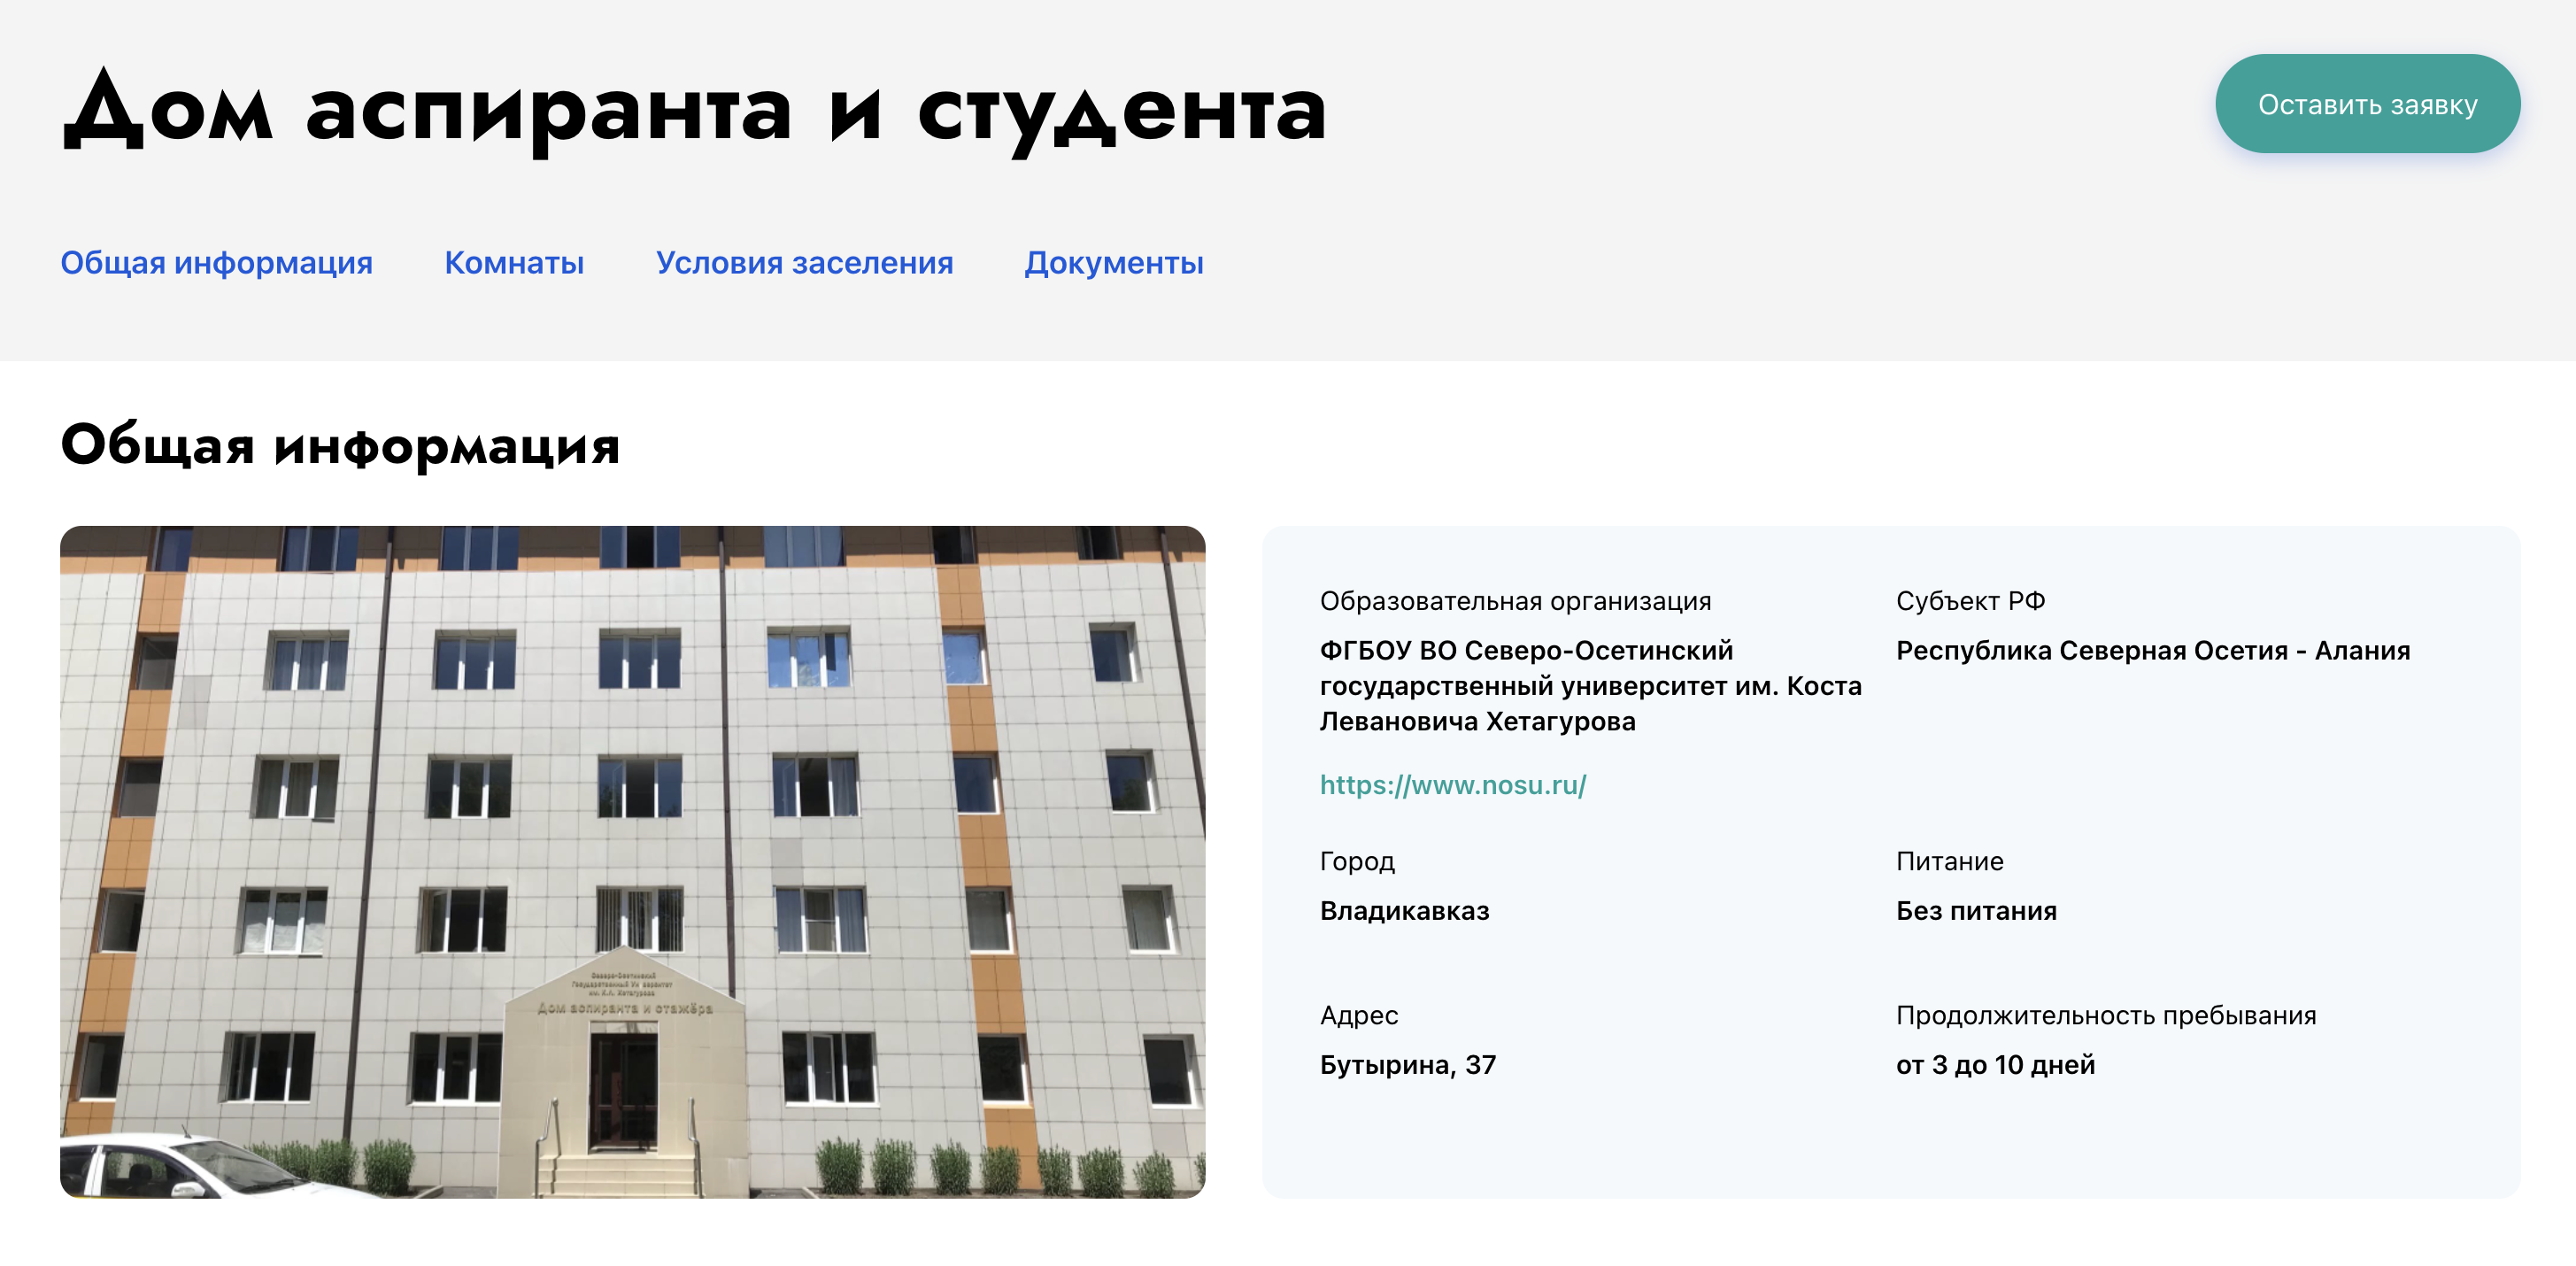 Пожить от 3 до 10 дней во Владикавказе без питания можно бесплатно. Источник: студтуризм.рф